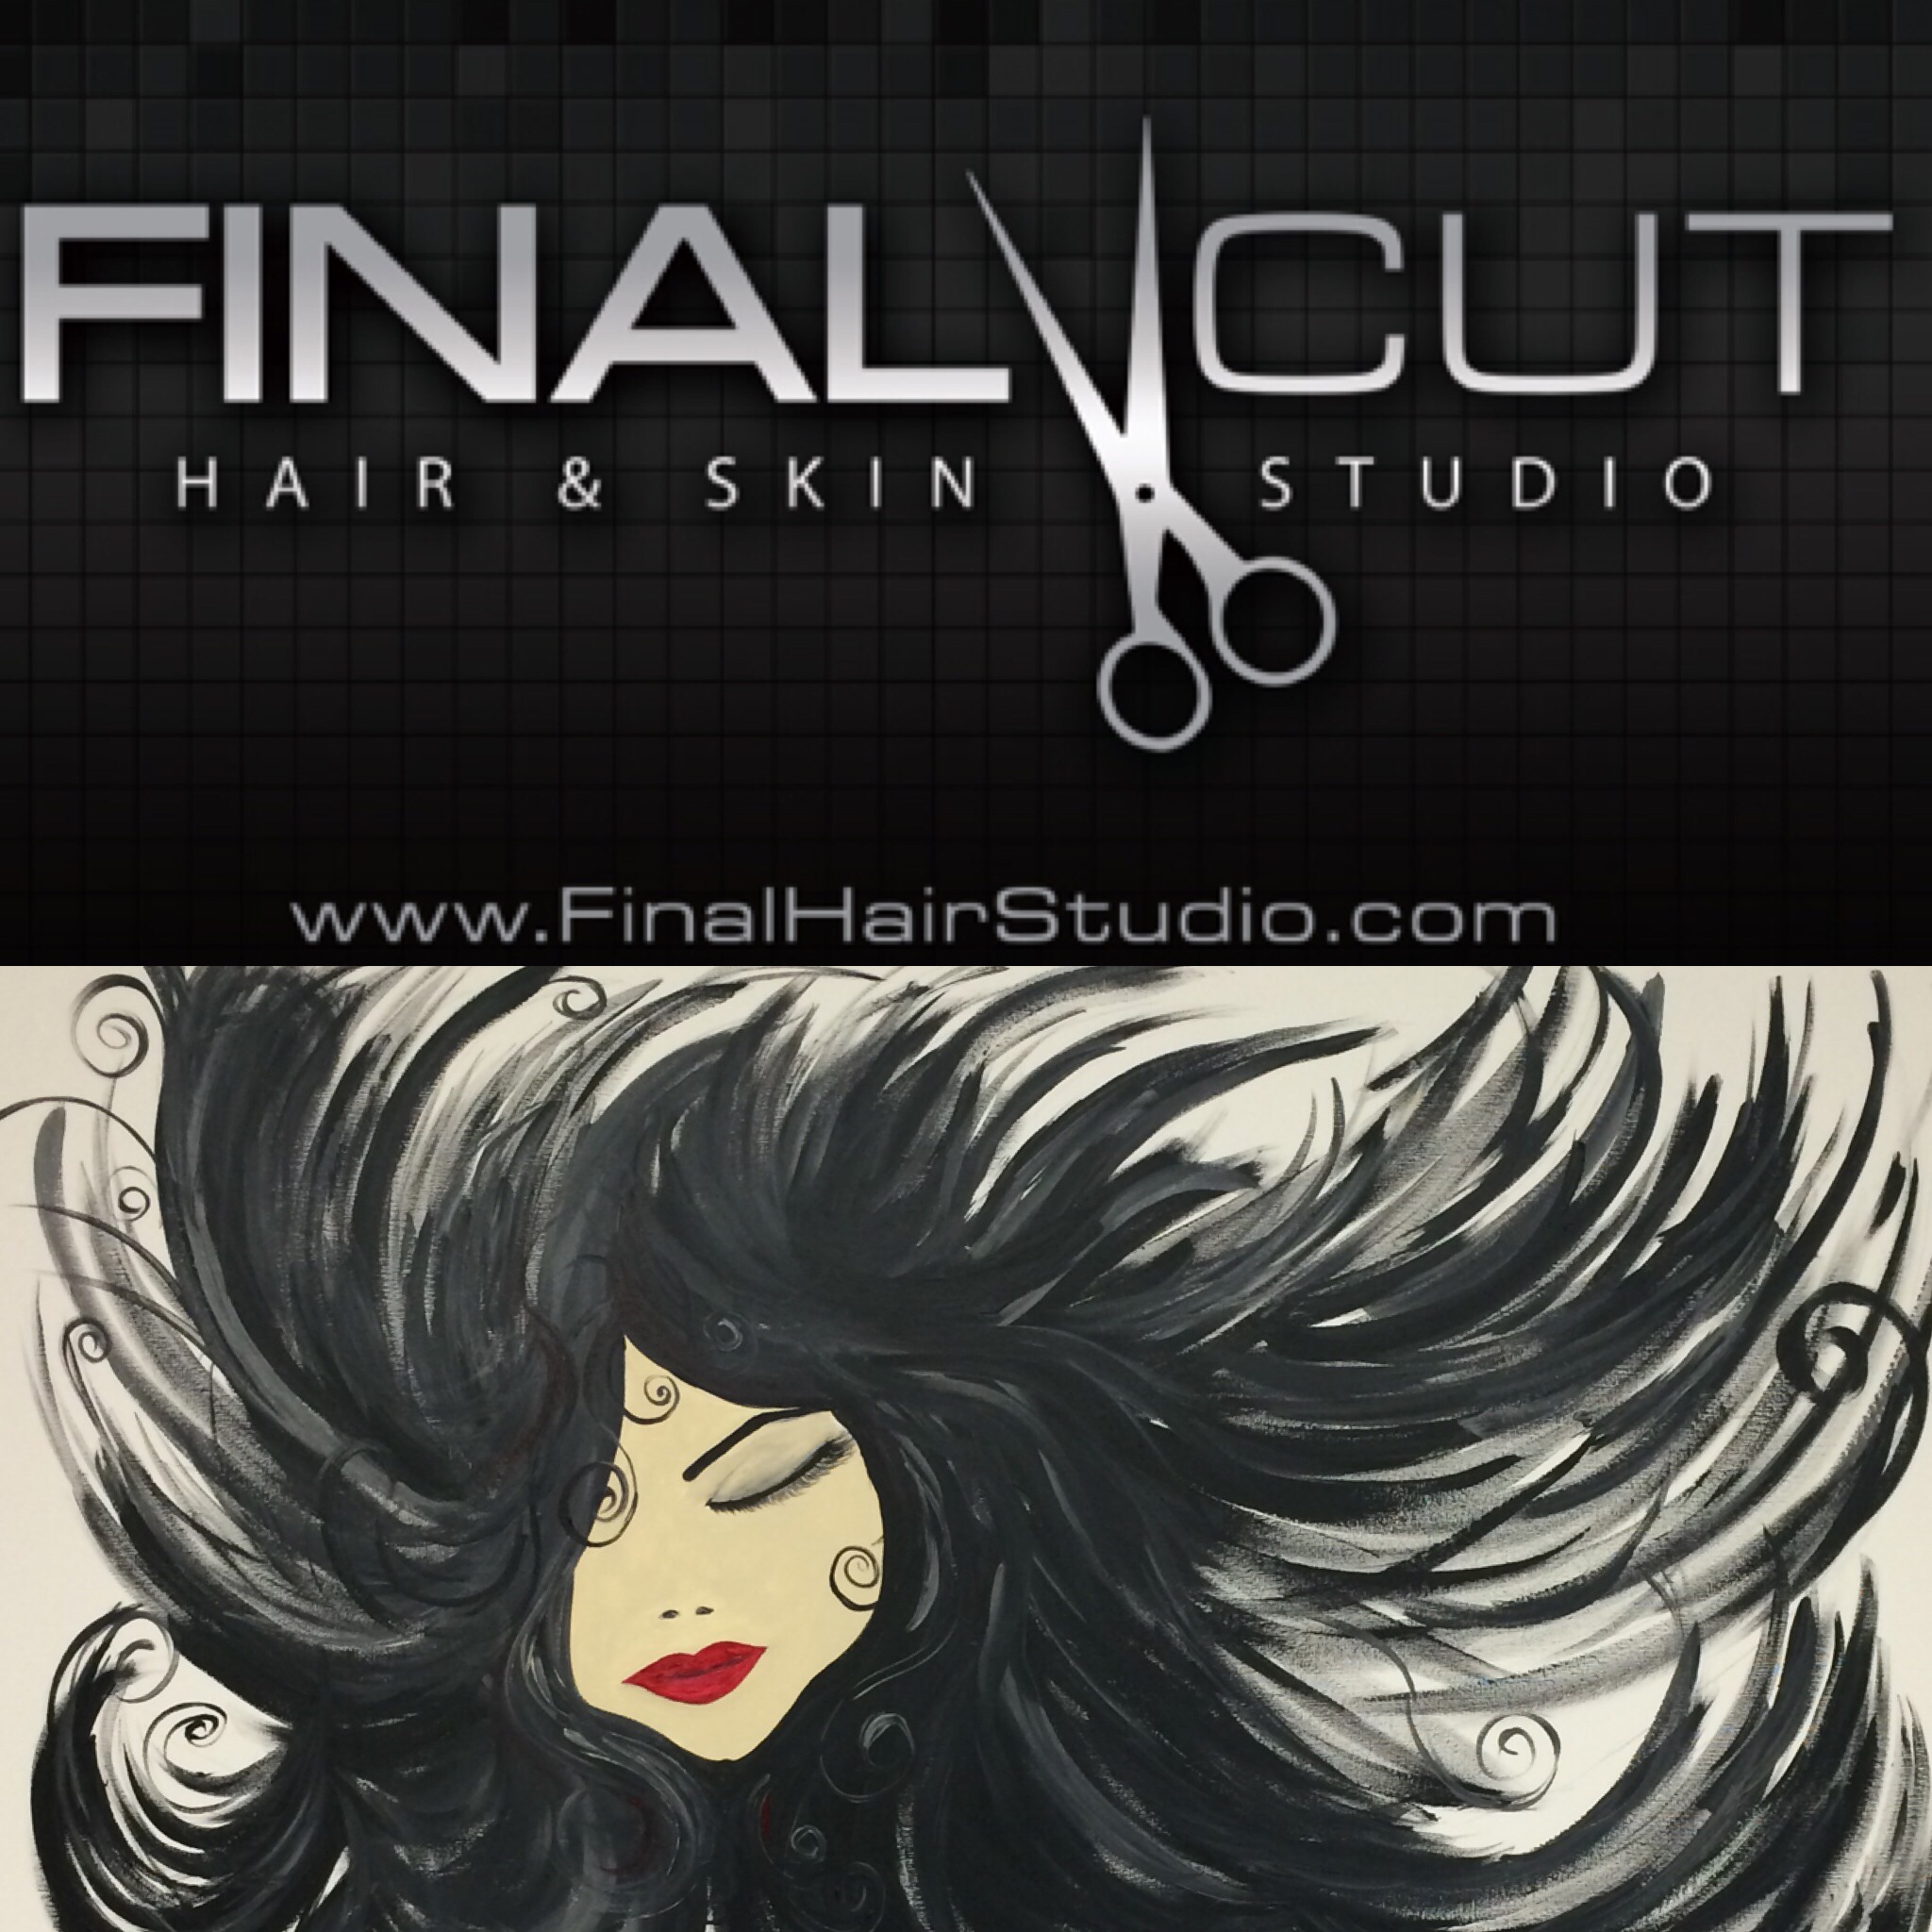 Final Cut Hair Studio